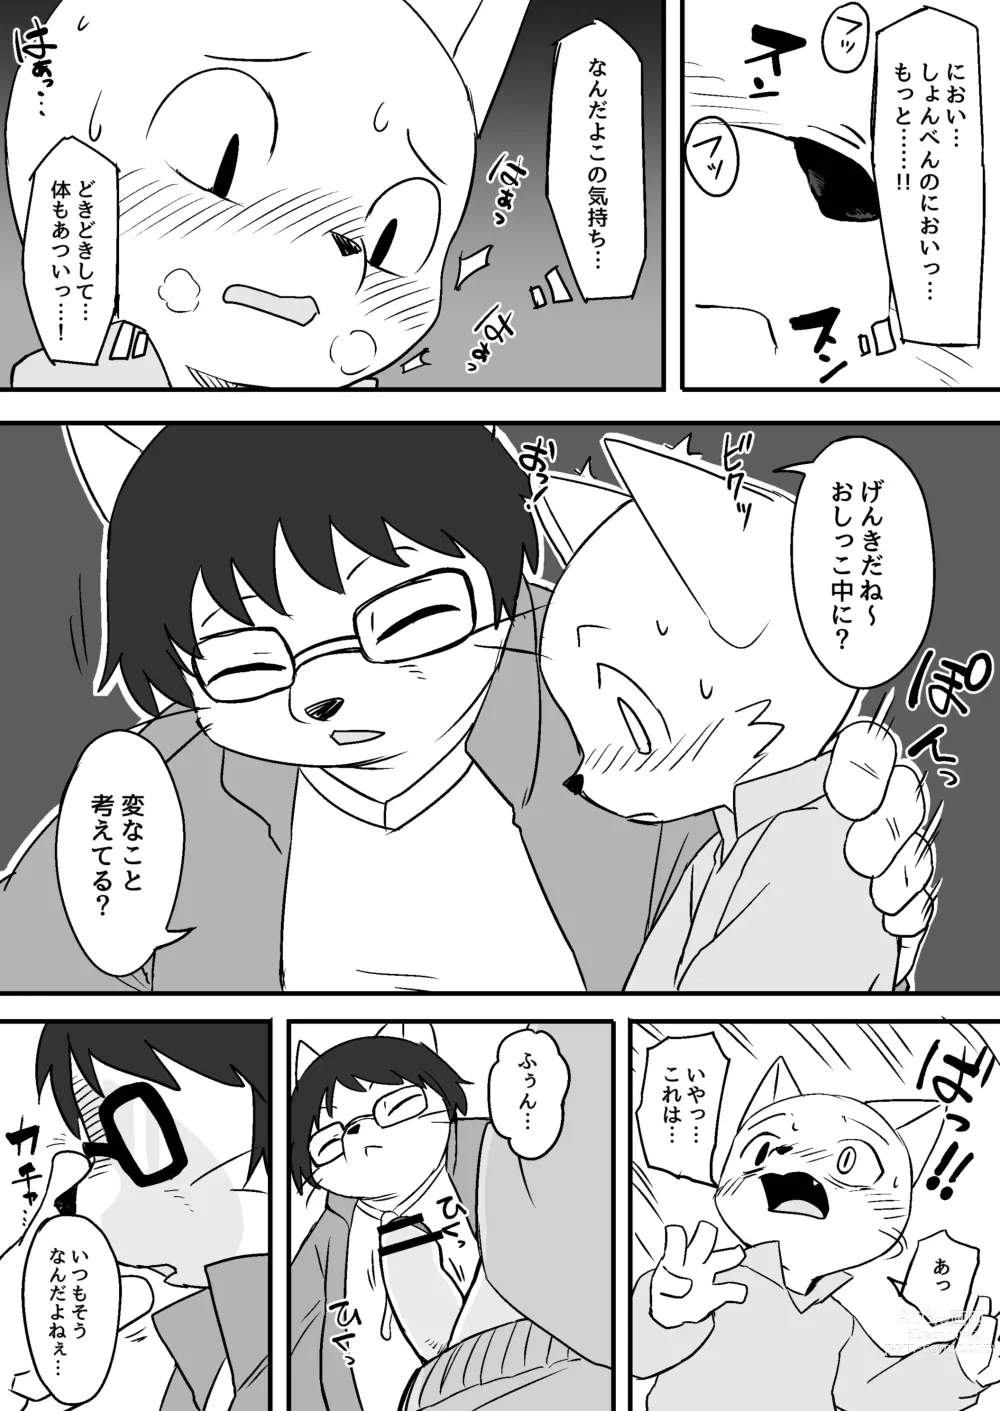 Page 2 of doujinshi Manmosu Marimo - Sensei Story #1